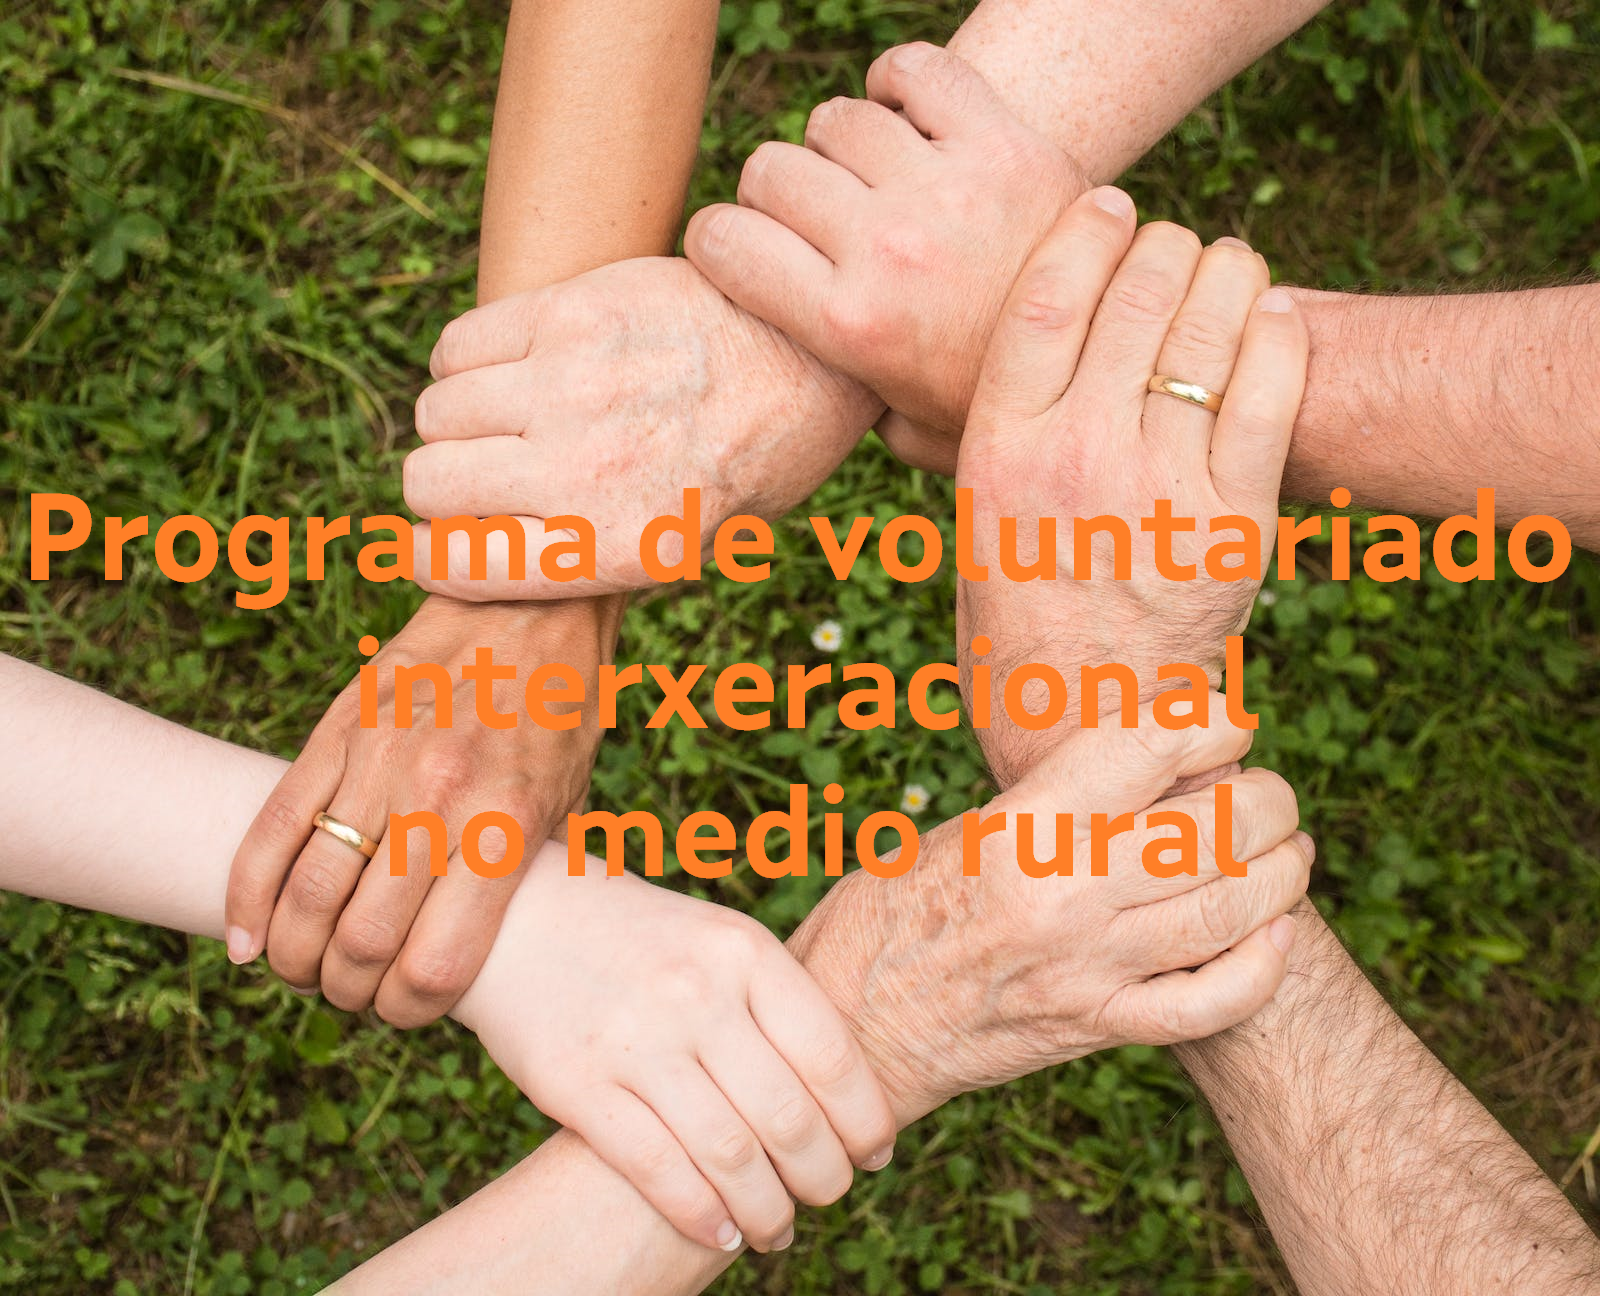 Voluntariado interxeracional no medio rural